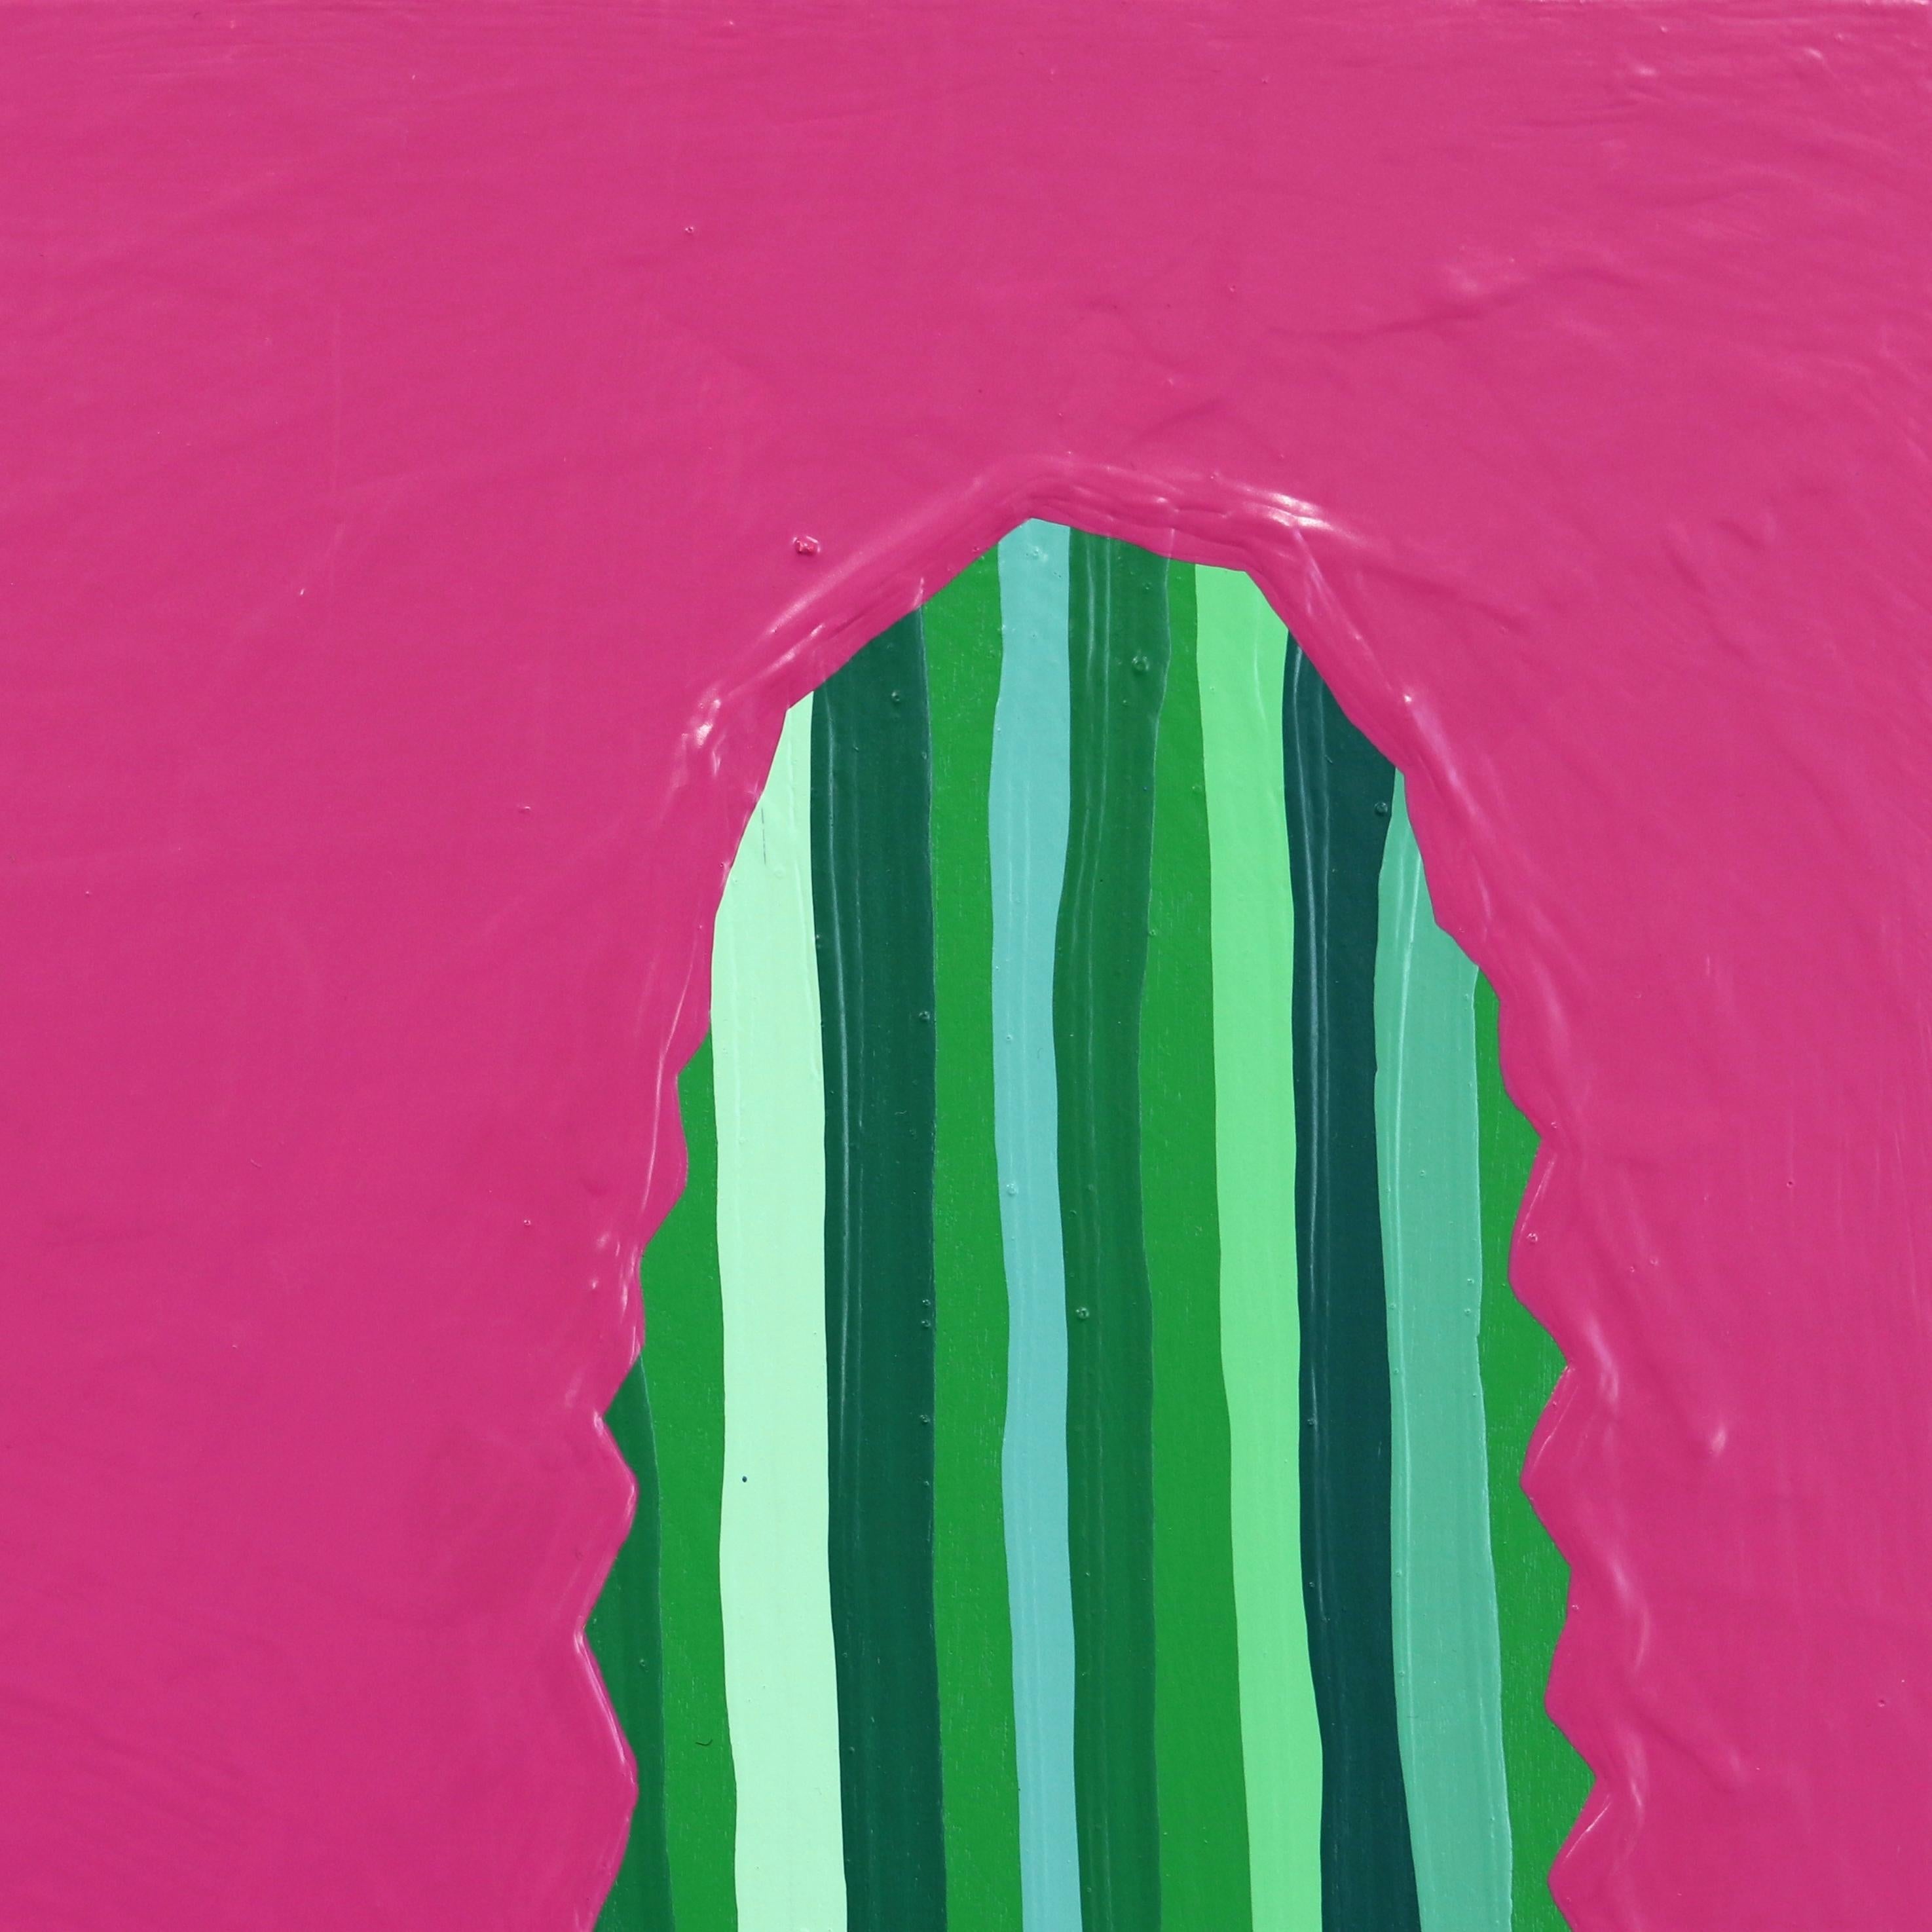 Rosa Picante - Peinture de cactus rose et verte vibrante d'inspiration Pop Art du Sud-Ouest - Minimaliste Painting par Will Beger